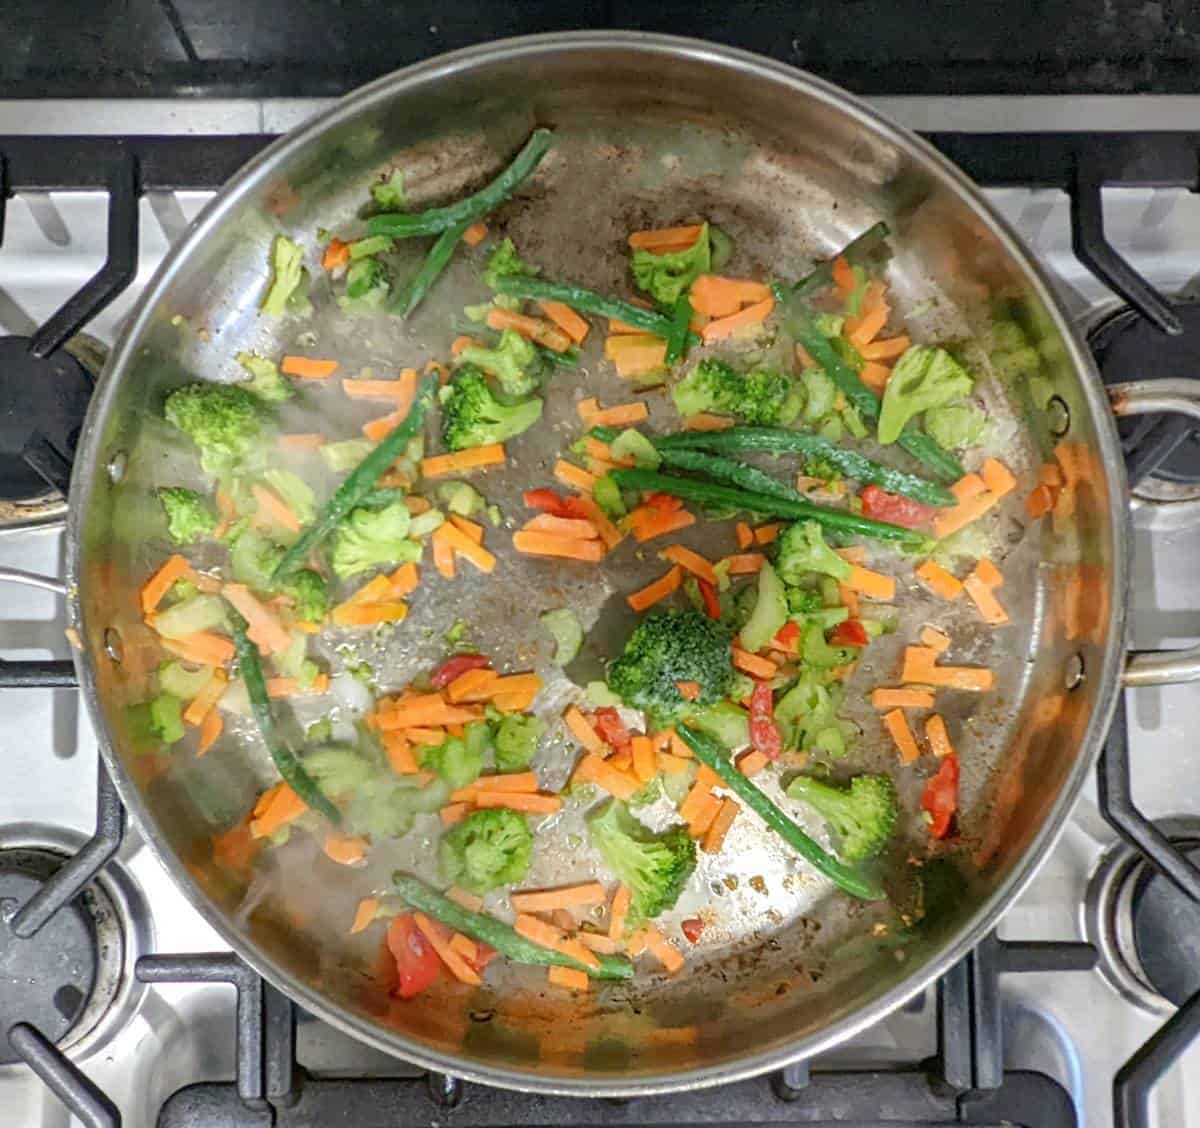 Stir fry vegetables in a pan cooking.